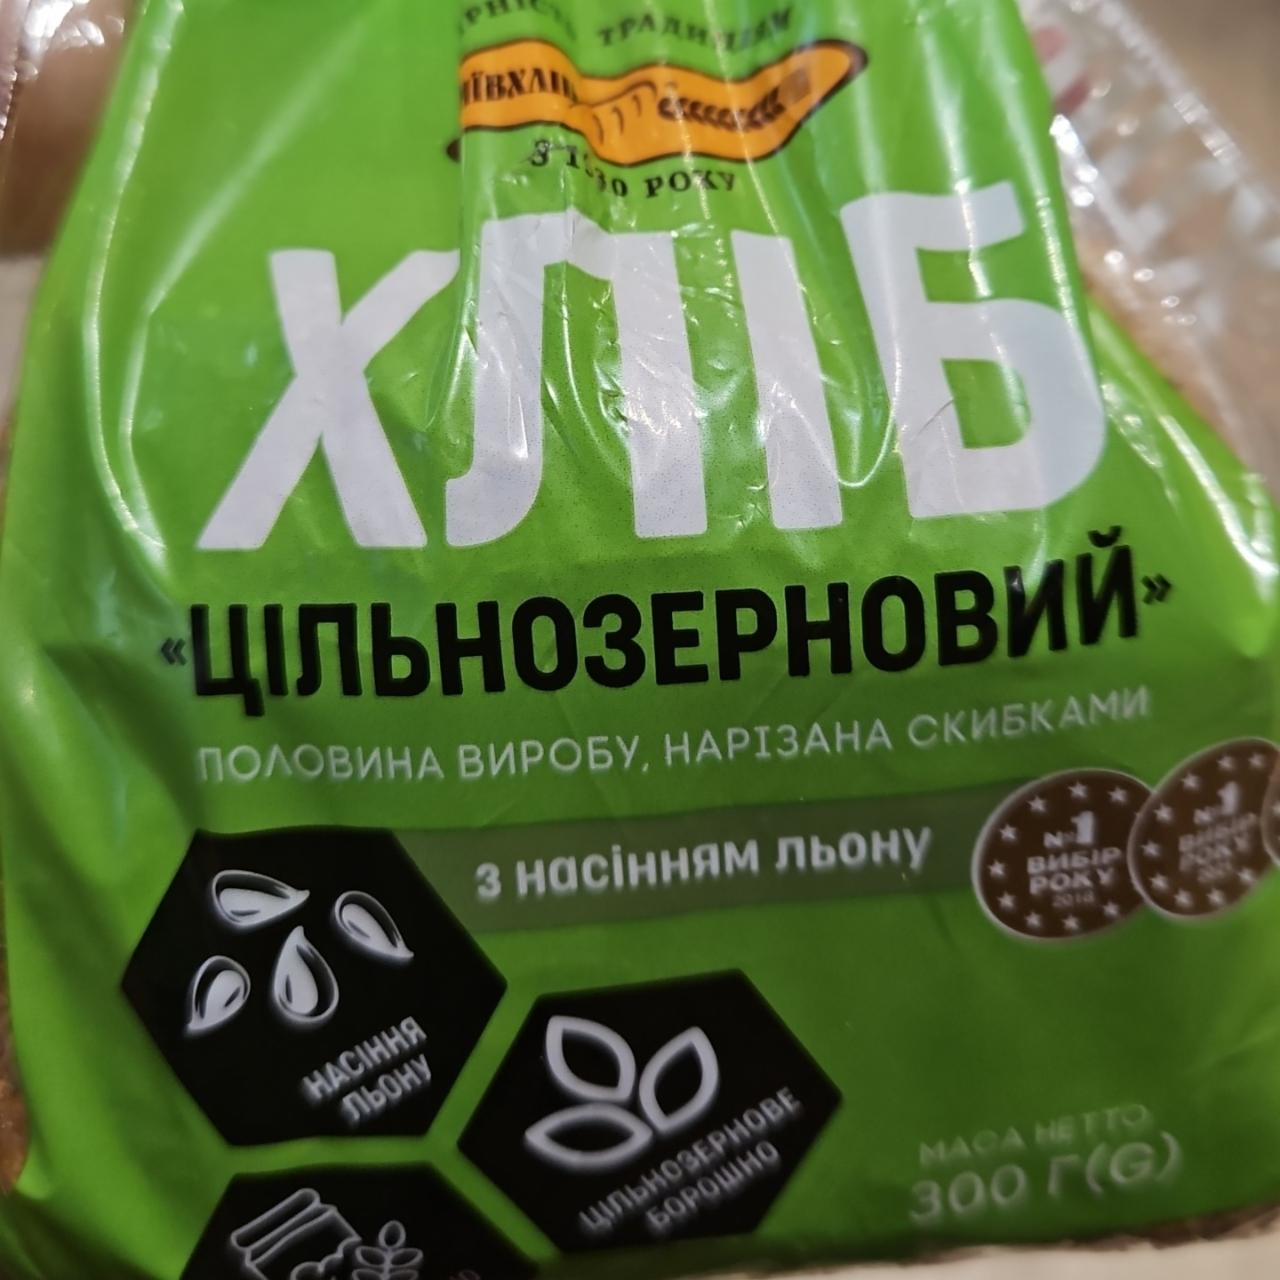 Фото - Хлеб цельнозерновой с семенами льна Киевхлеб